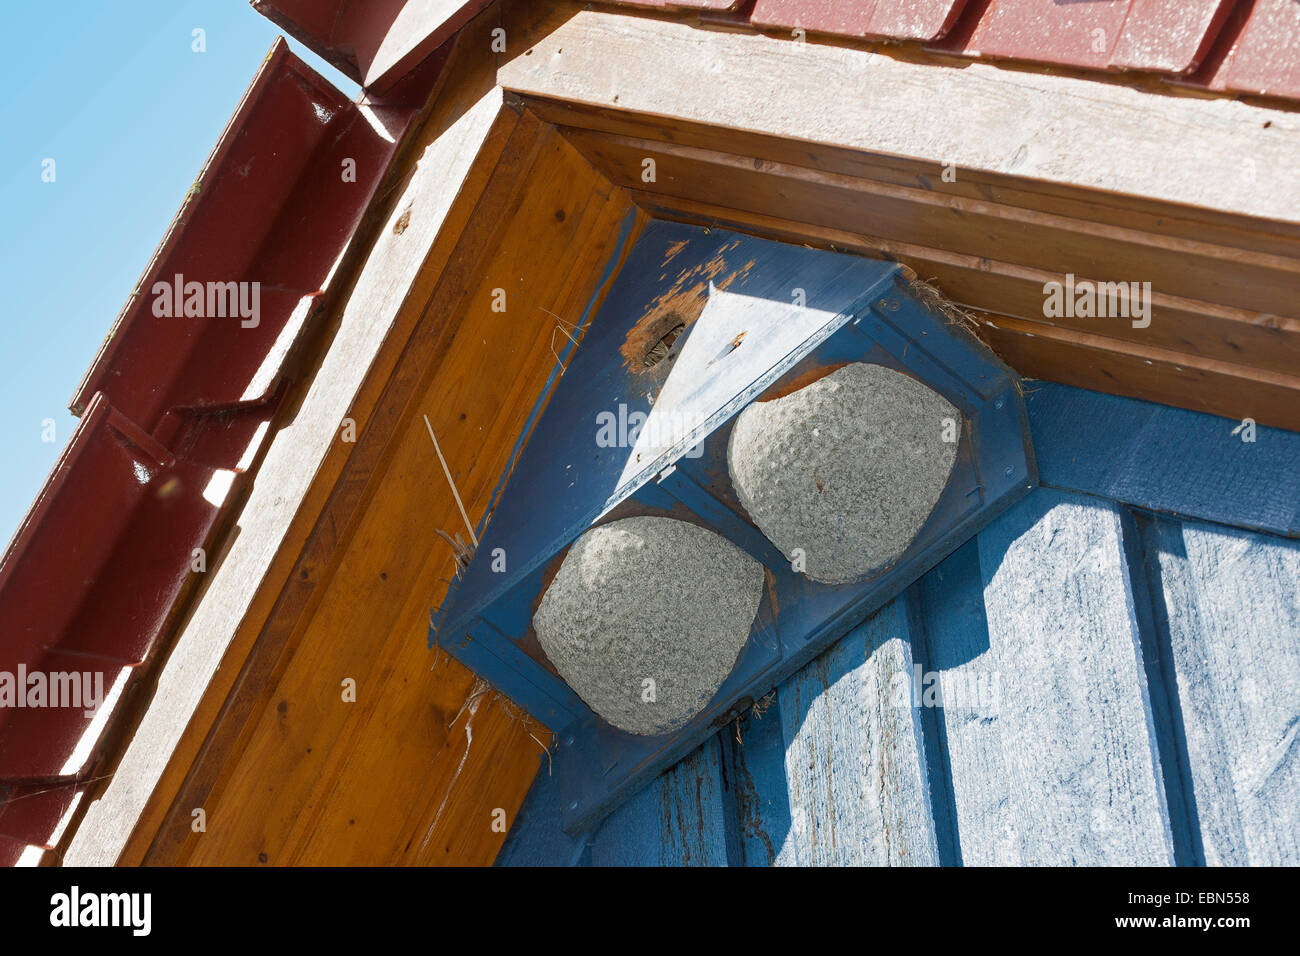 gemeinsamen Mehlschwalbe (Delichon Urbica), Nistkasten für Mehlschwalben und Stare in das Satteldach eines Hauses, Deutschland Stockfoto